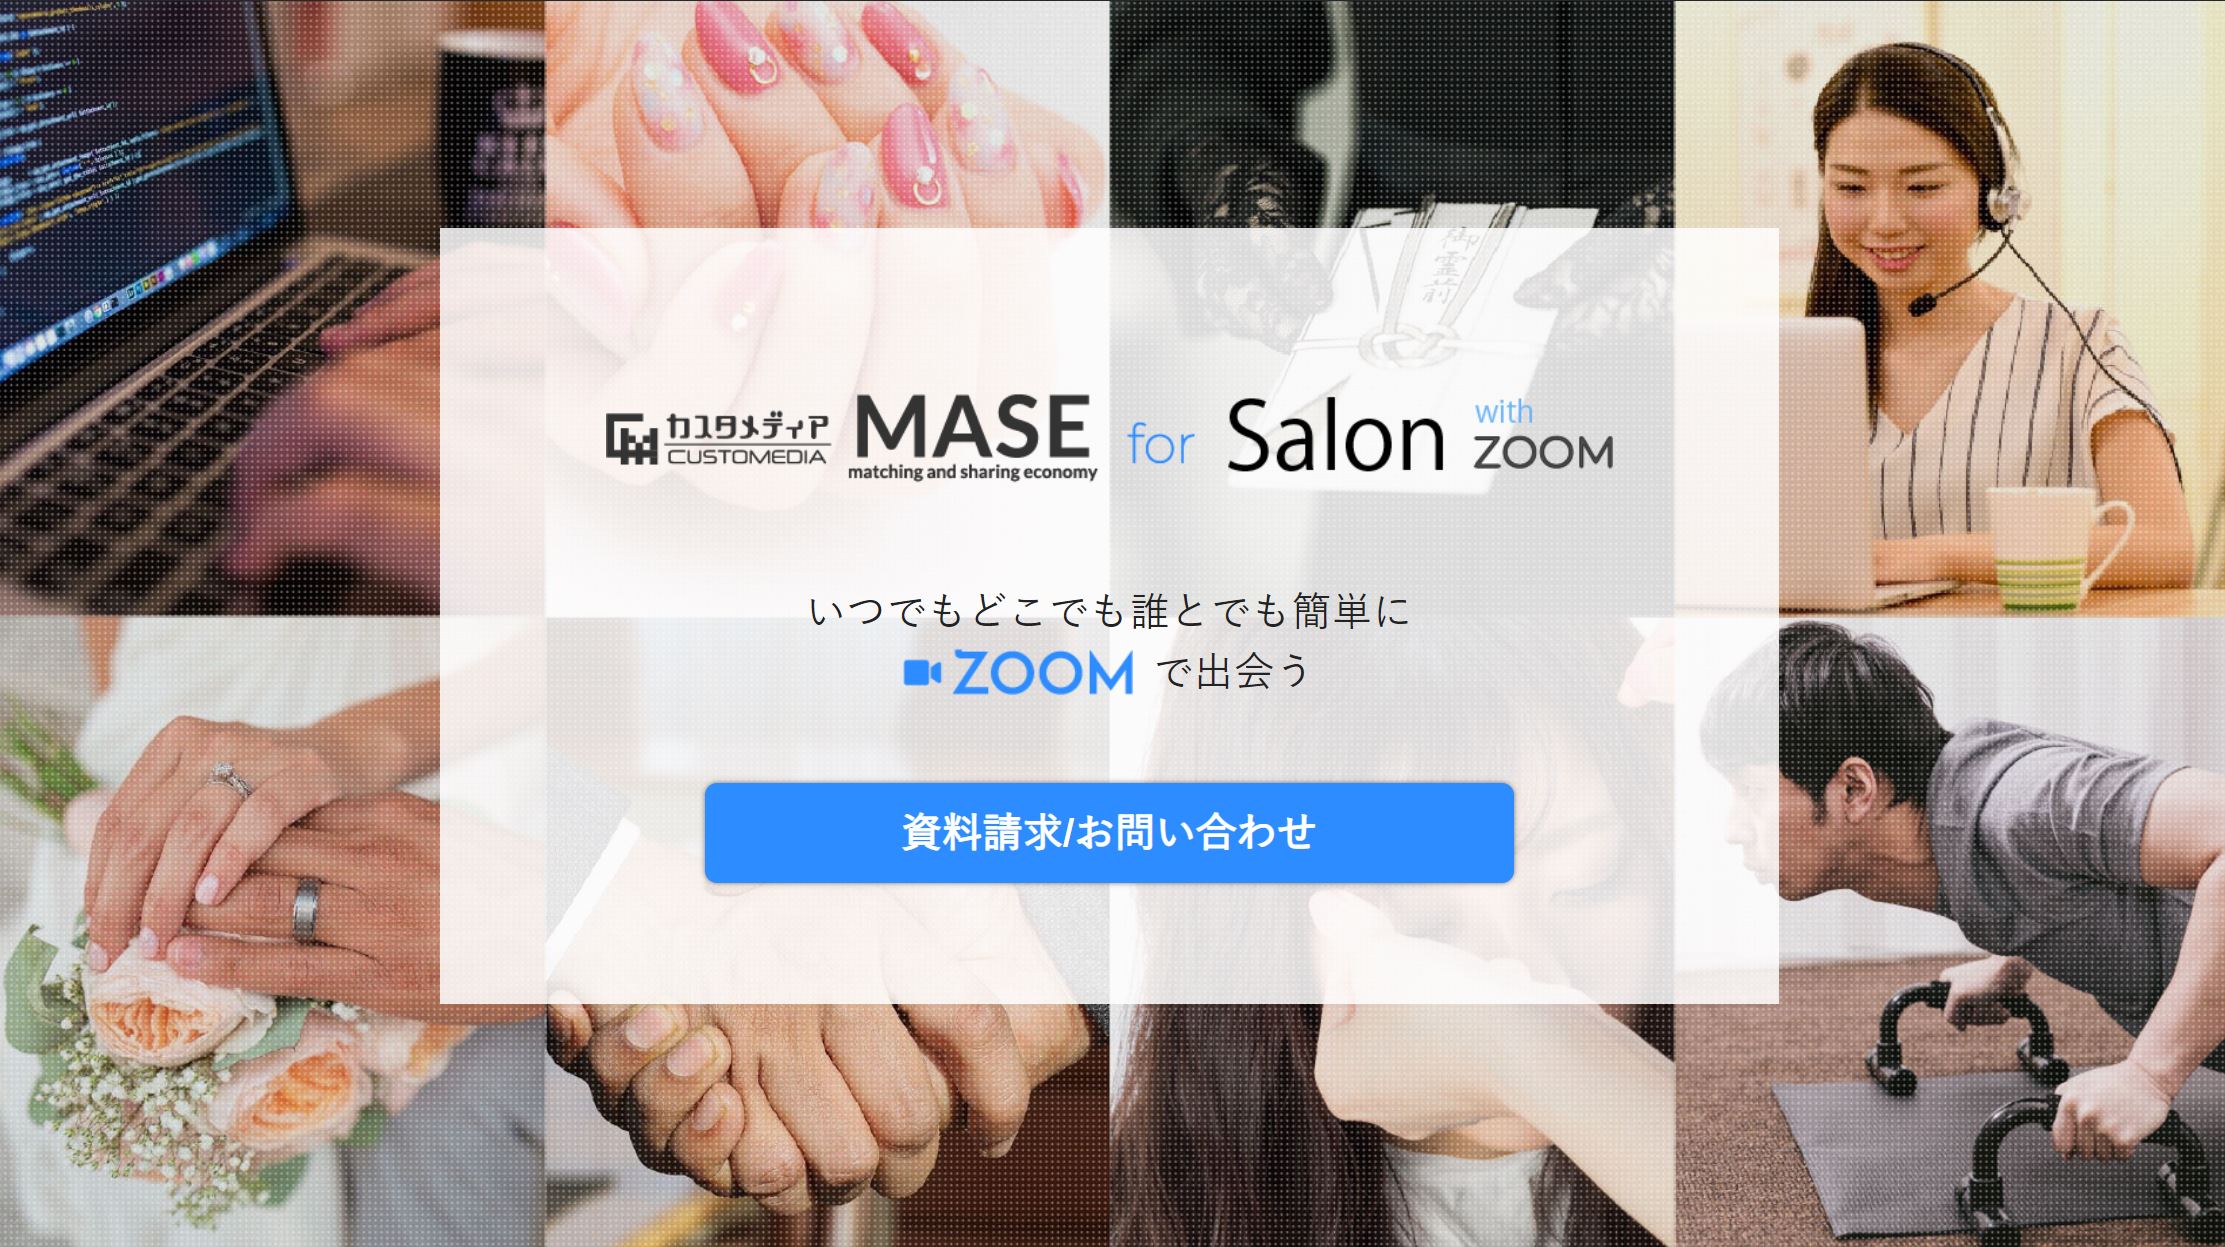 ZOOM等を使ったオンラインサービスをスピーディー且つ安価で構築できる「MASE for Salon with ZOOM」をリリースしました！